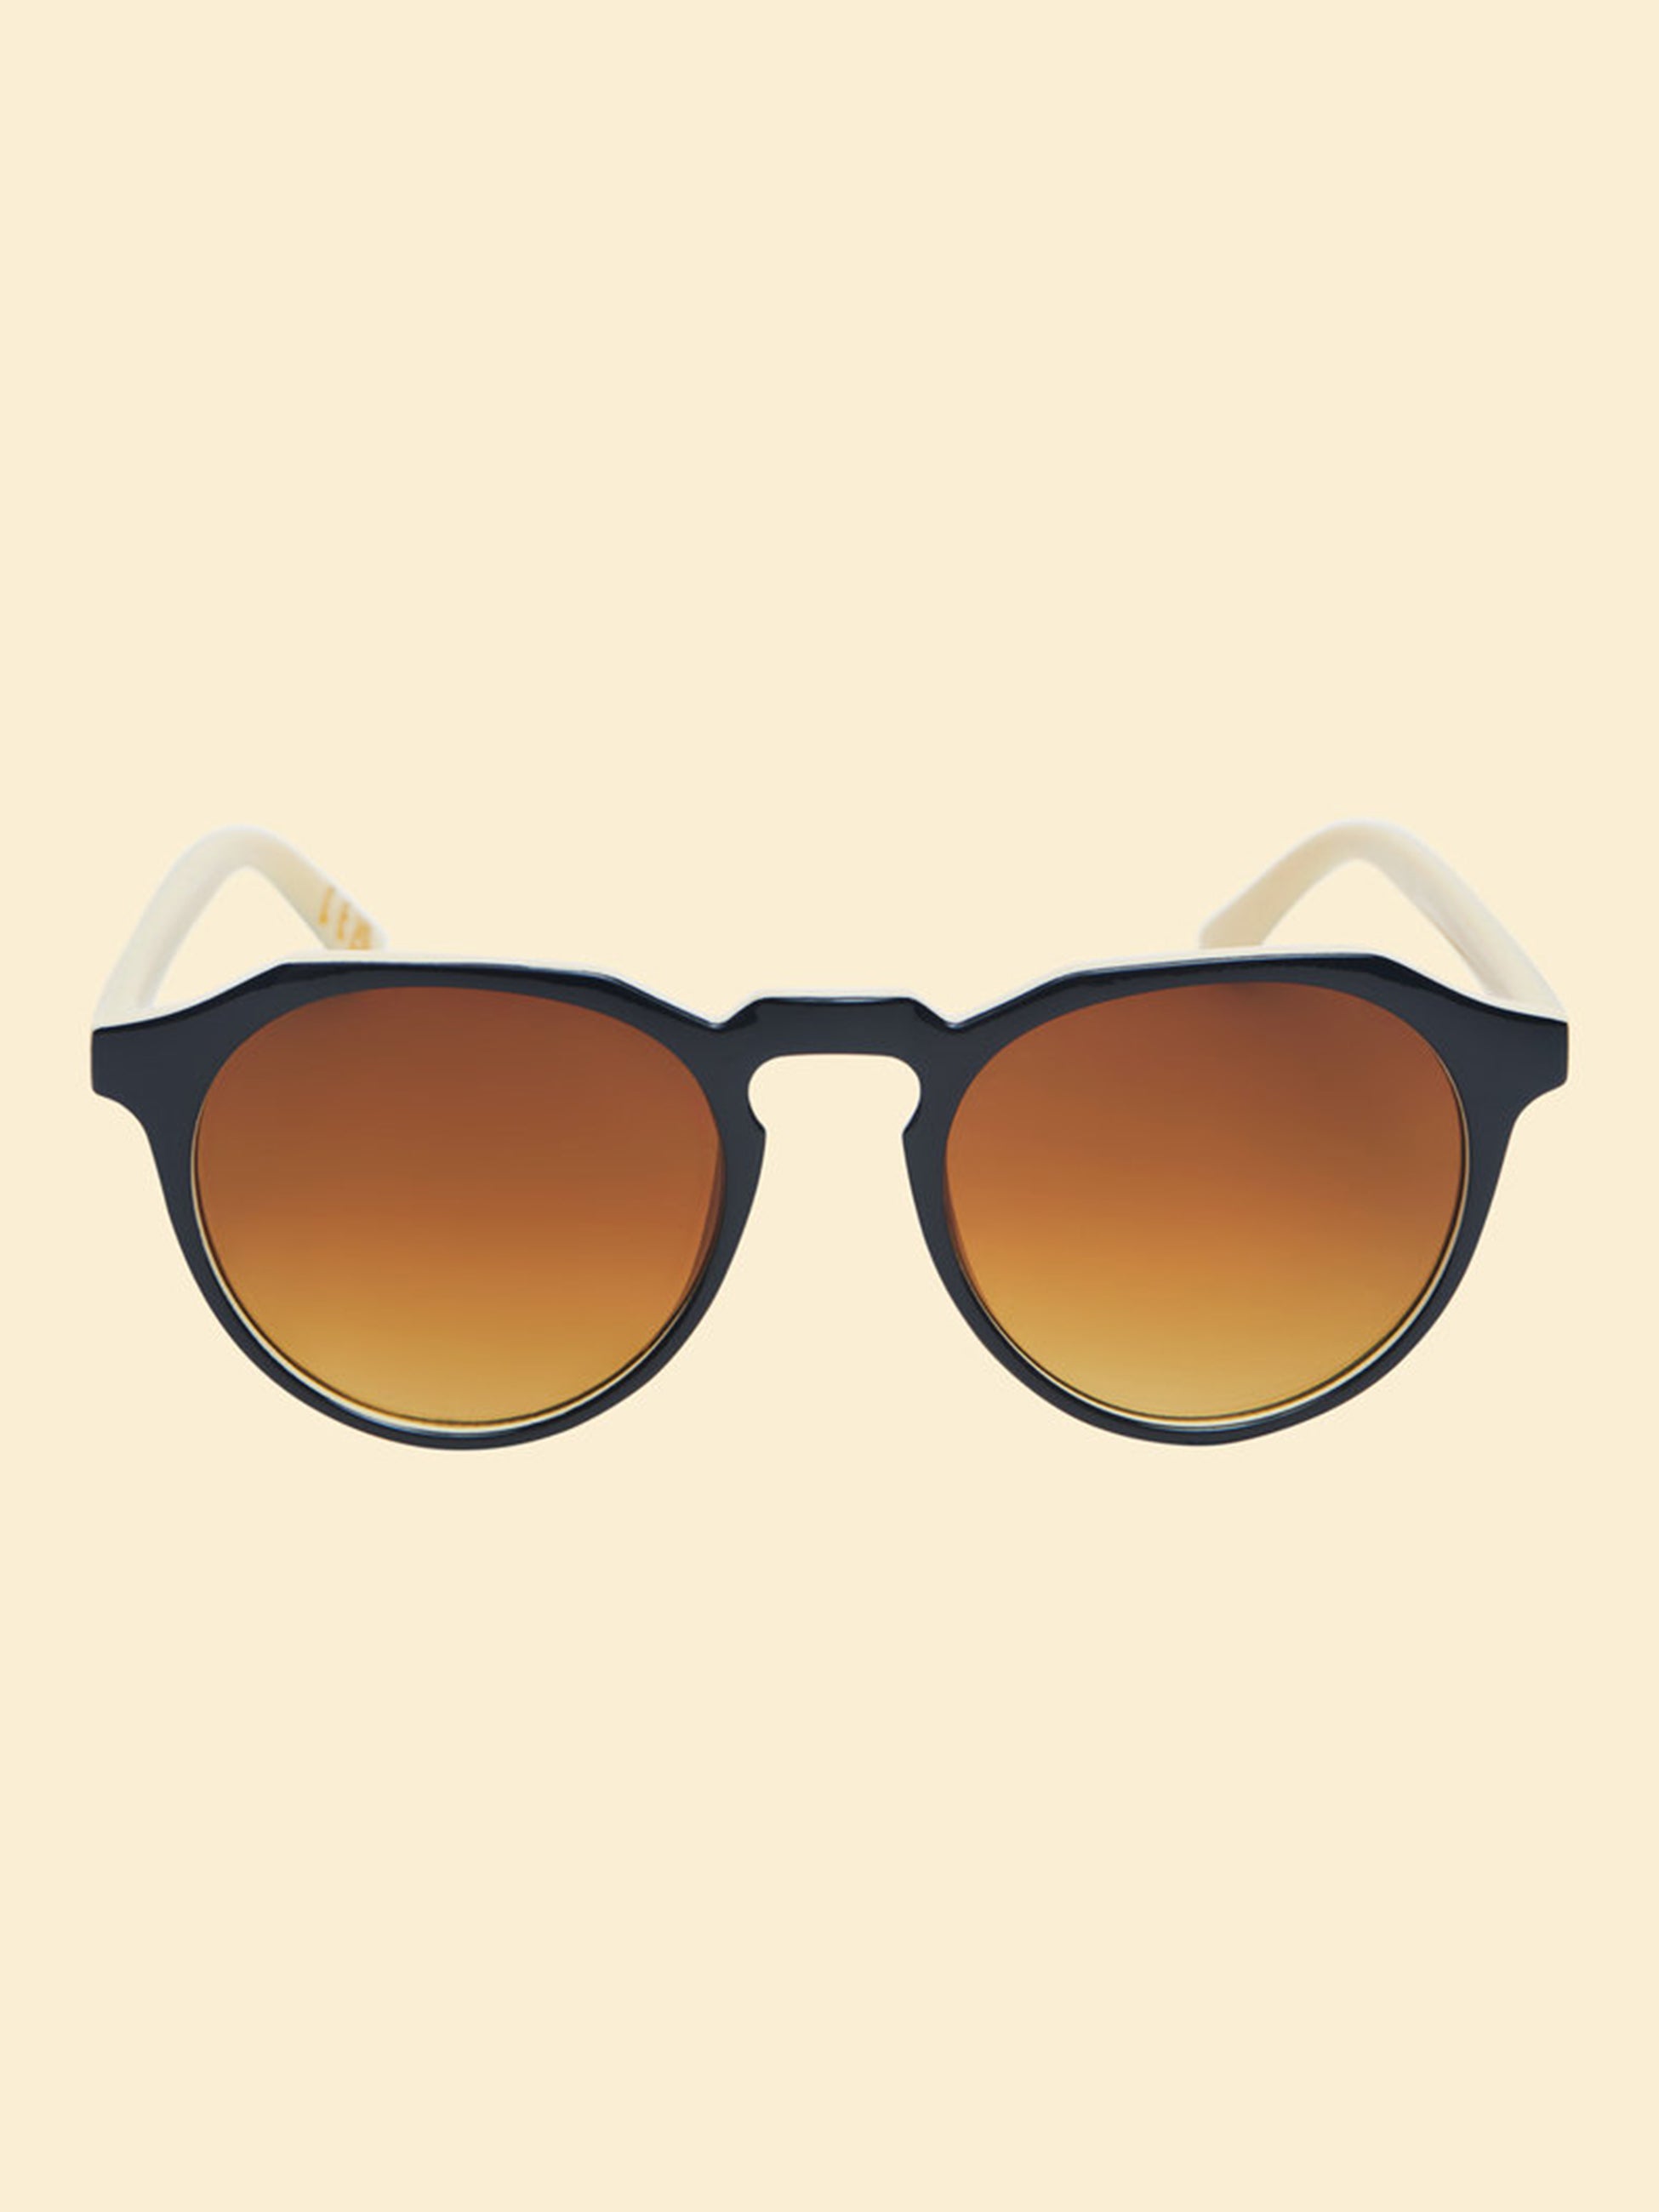 Mirren Sunglasses Limited Edition - Cappuccino